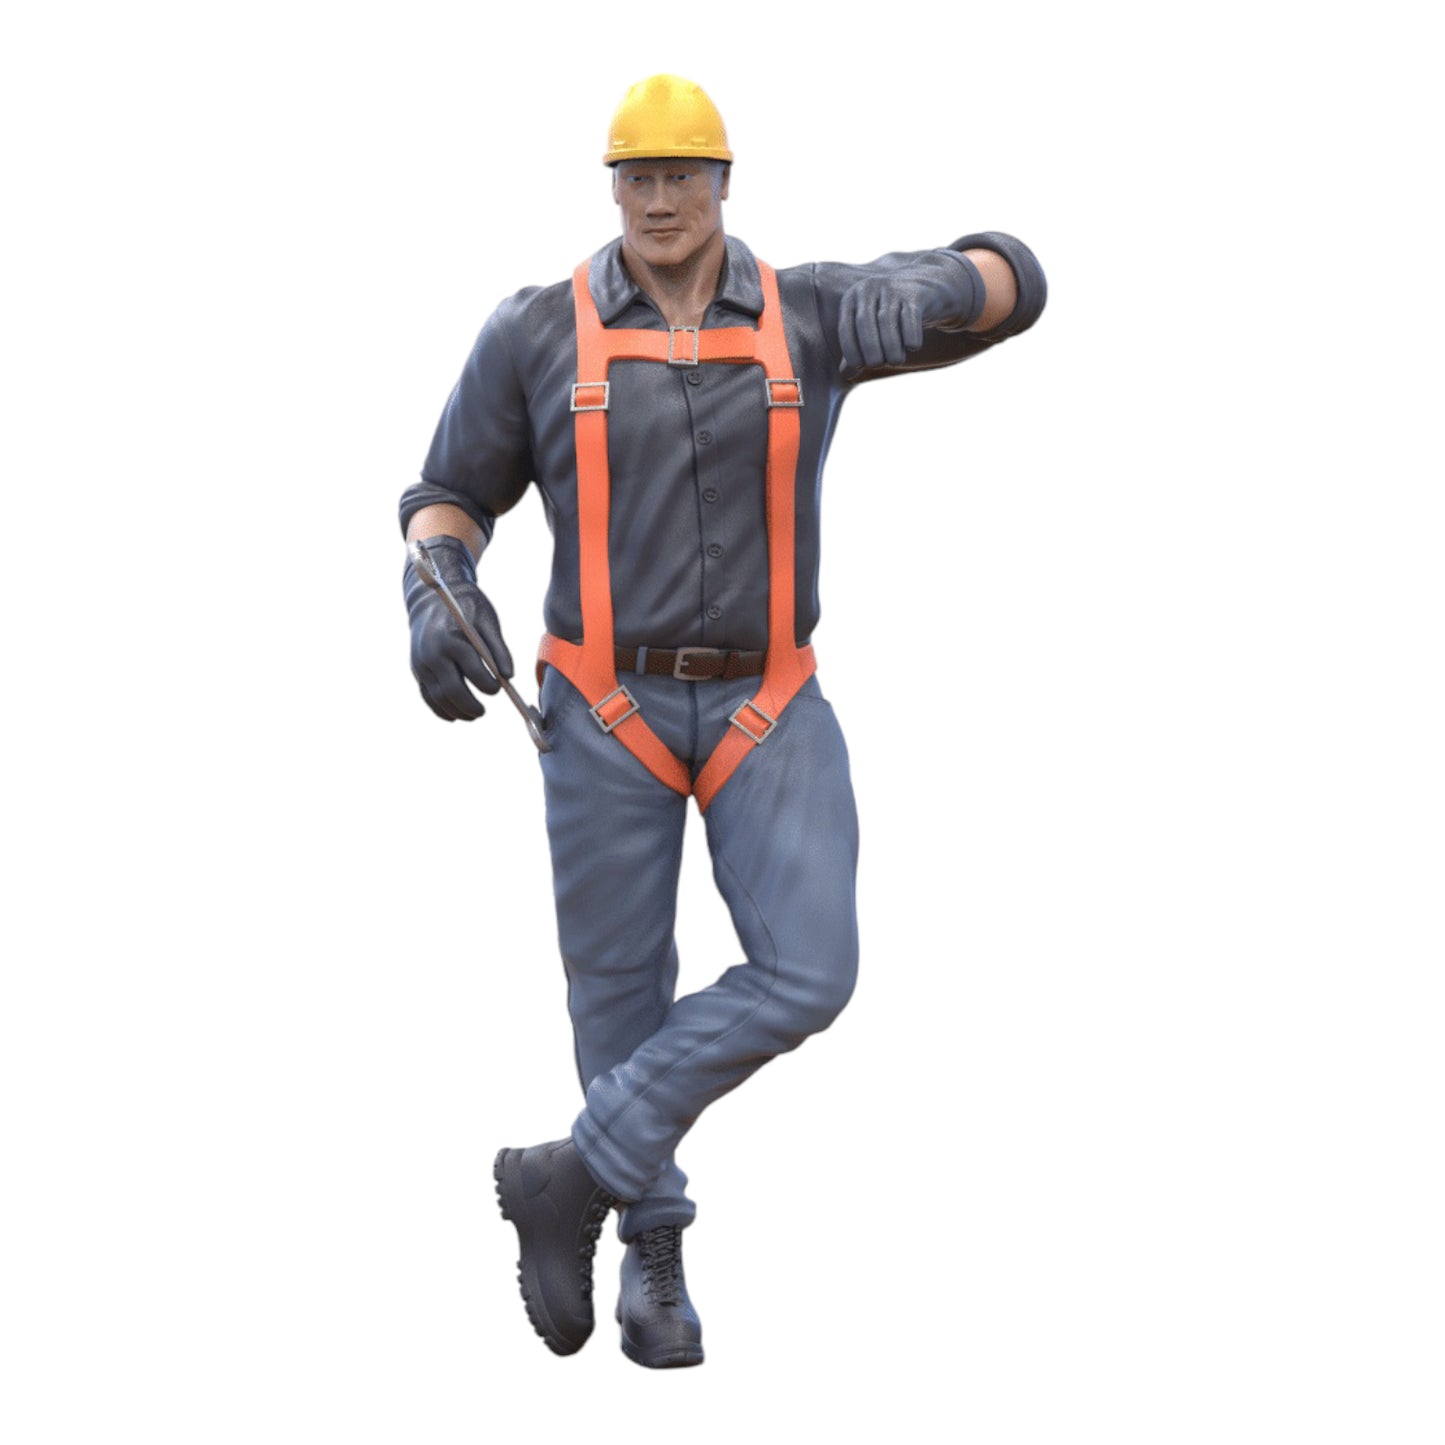 Produktfoto Diorama und Modellbau Miniatur Figur: Bauarbeiter lehnend